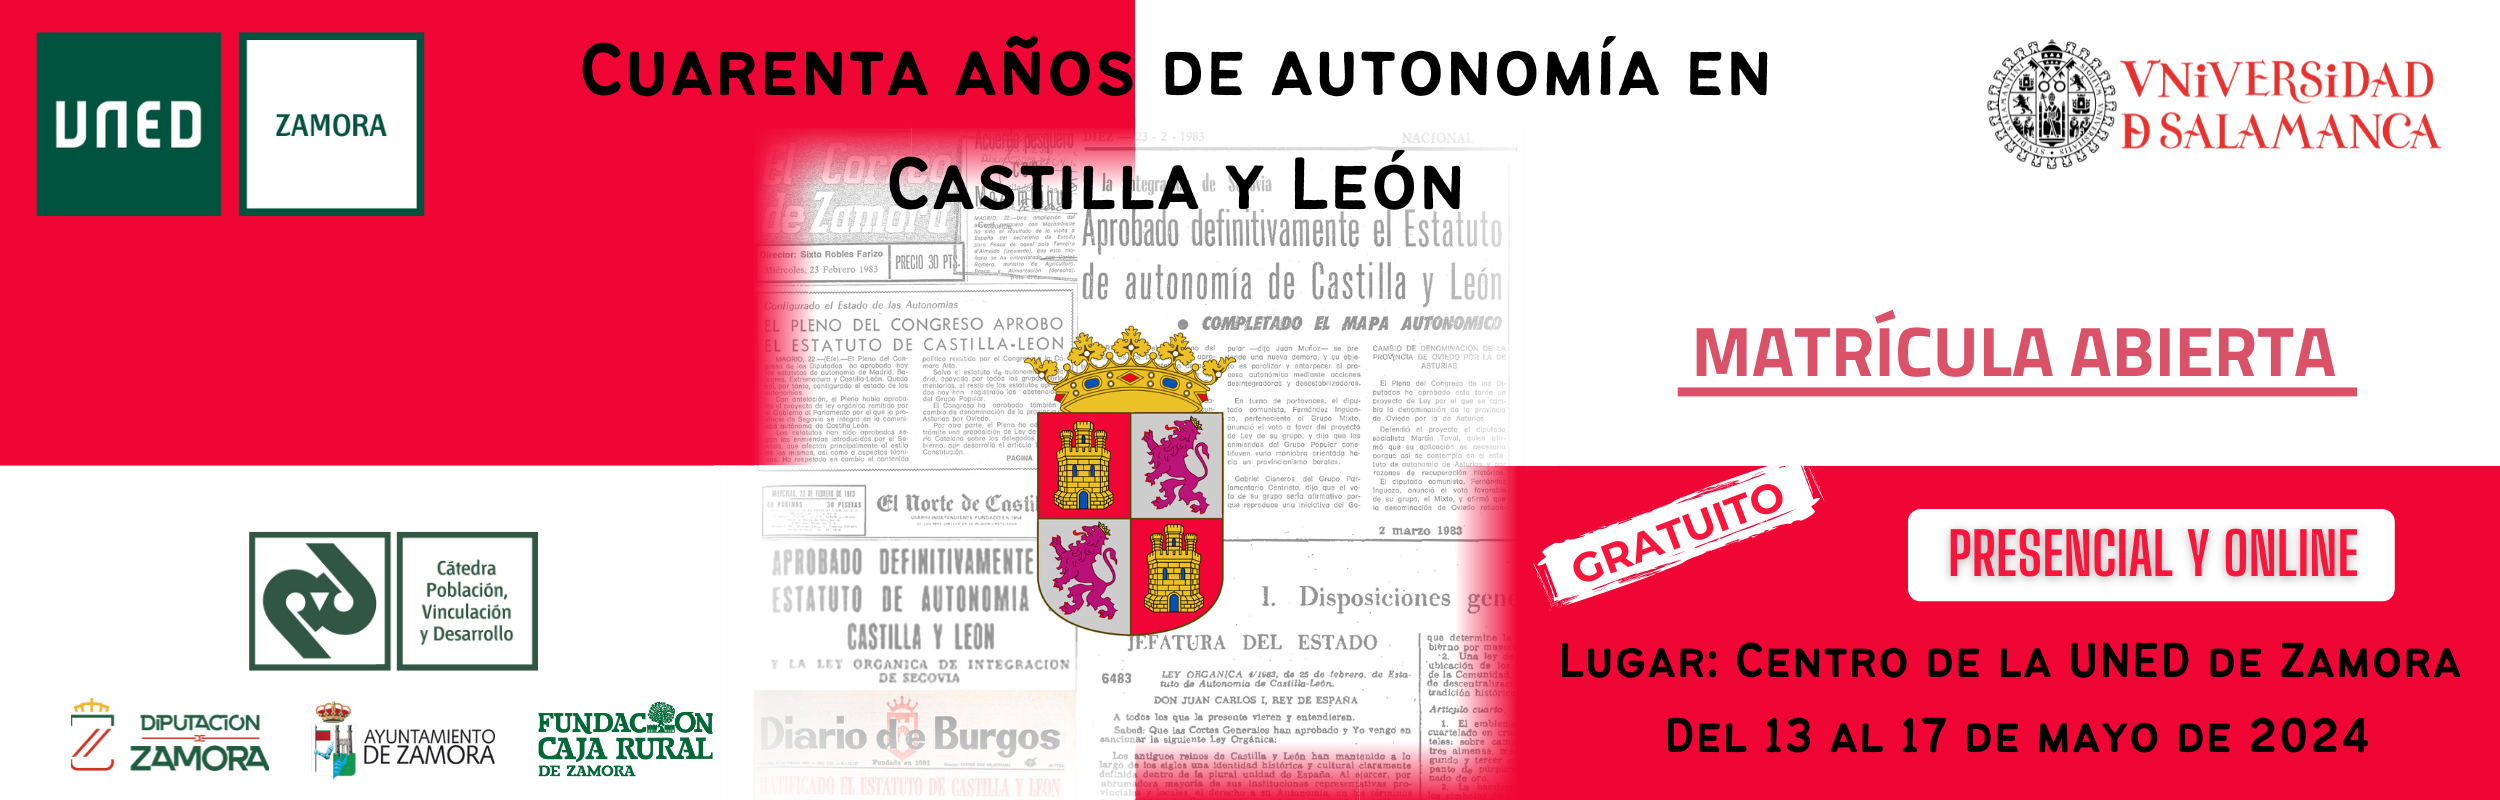 Cuarenta años de autonomía en Castilla y León